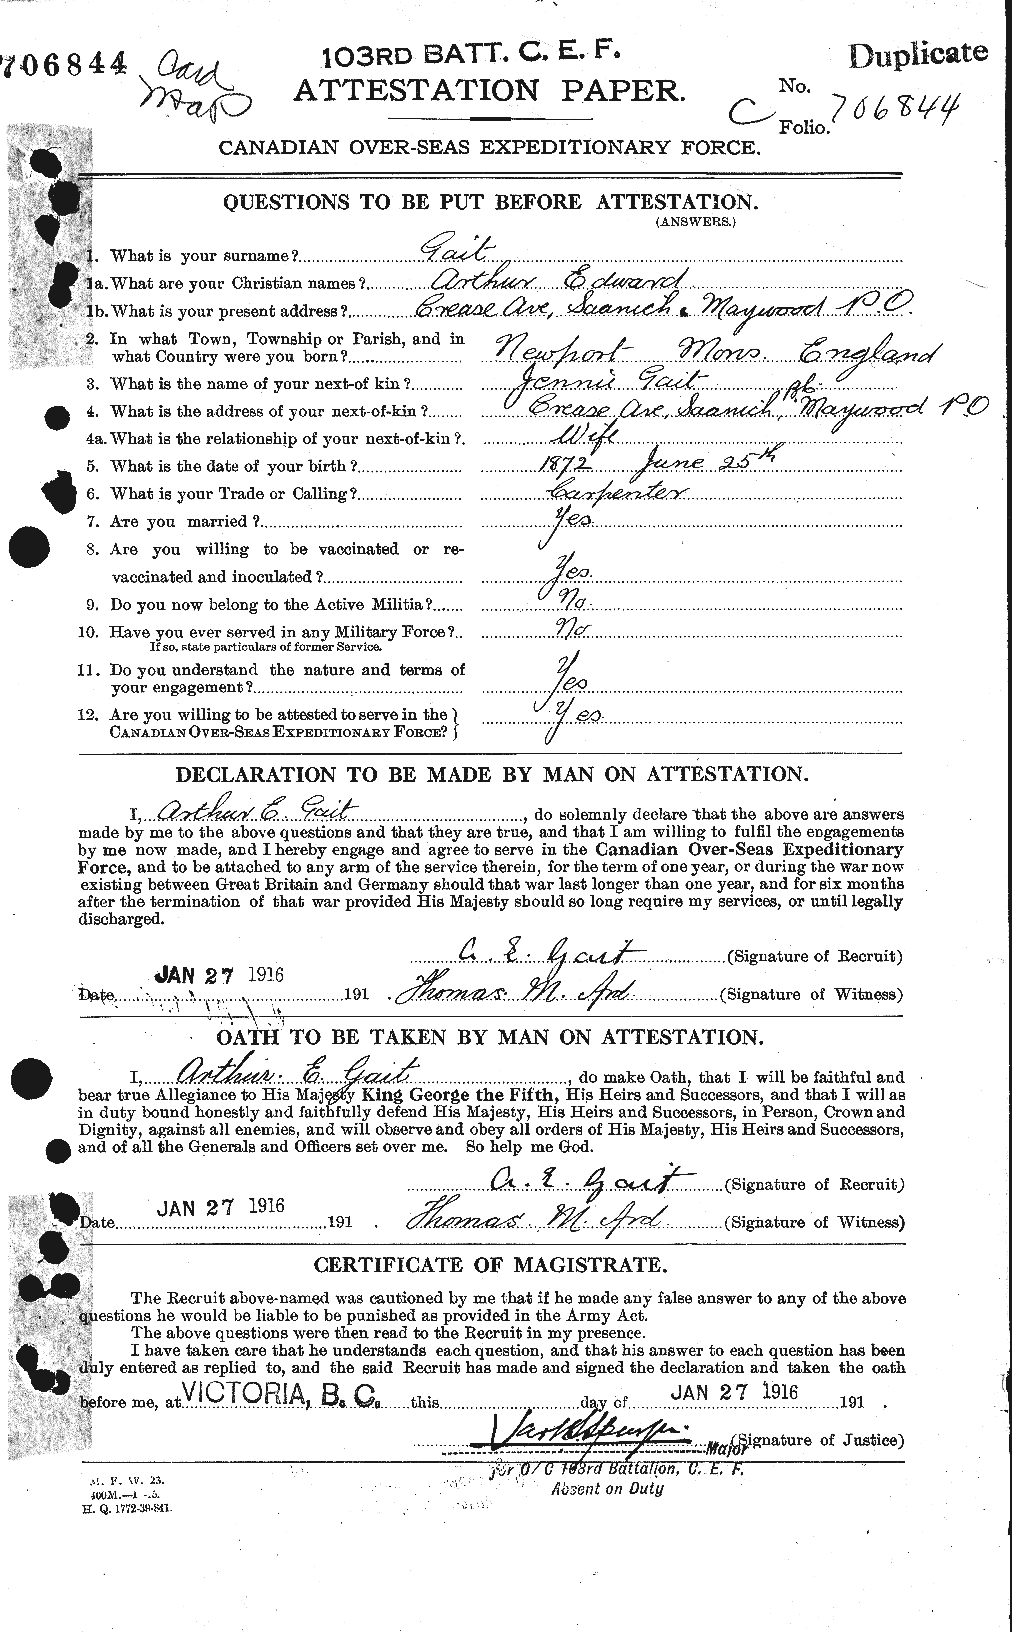 Dossiers du Personnel de la Première Guerre mondiale - CEC 341130a